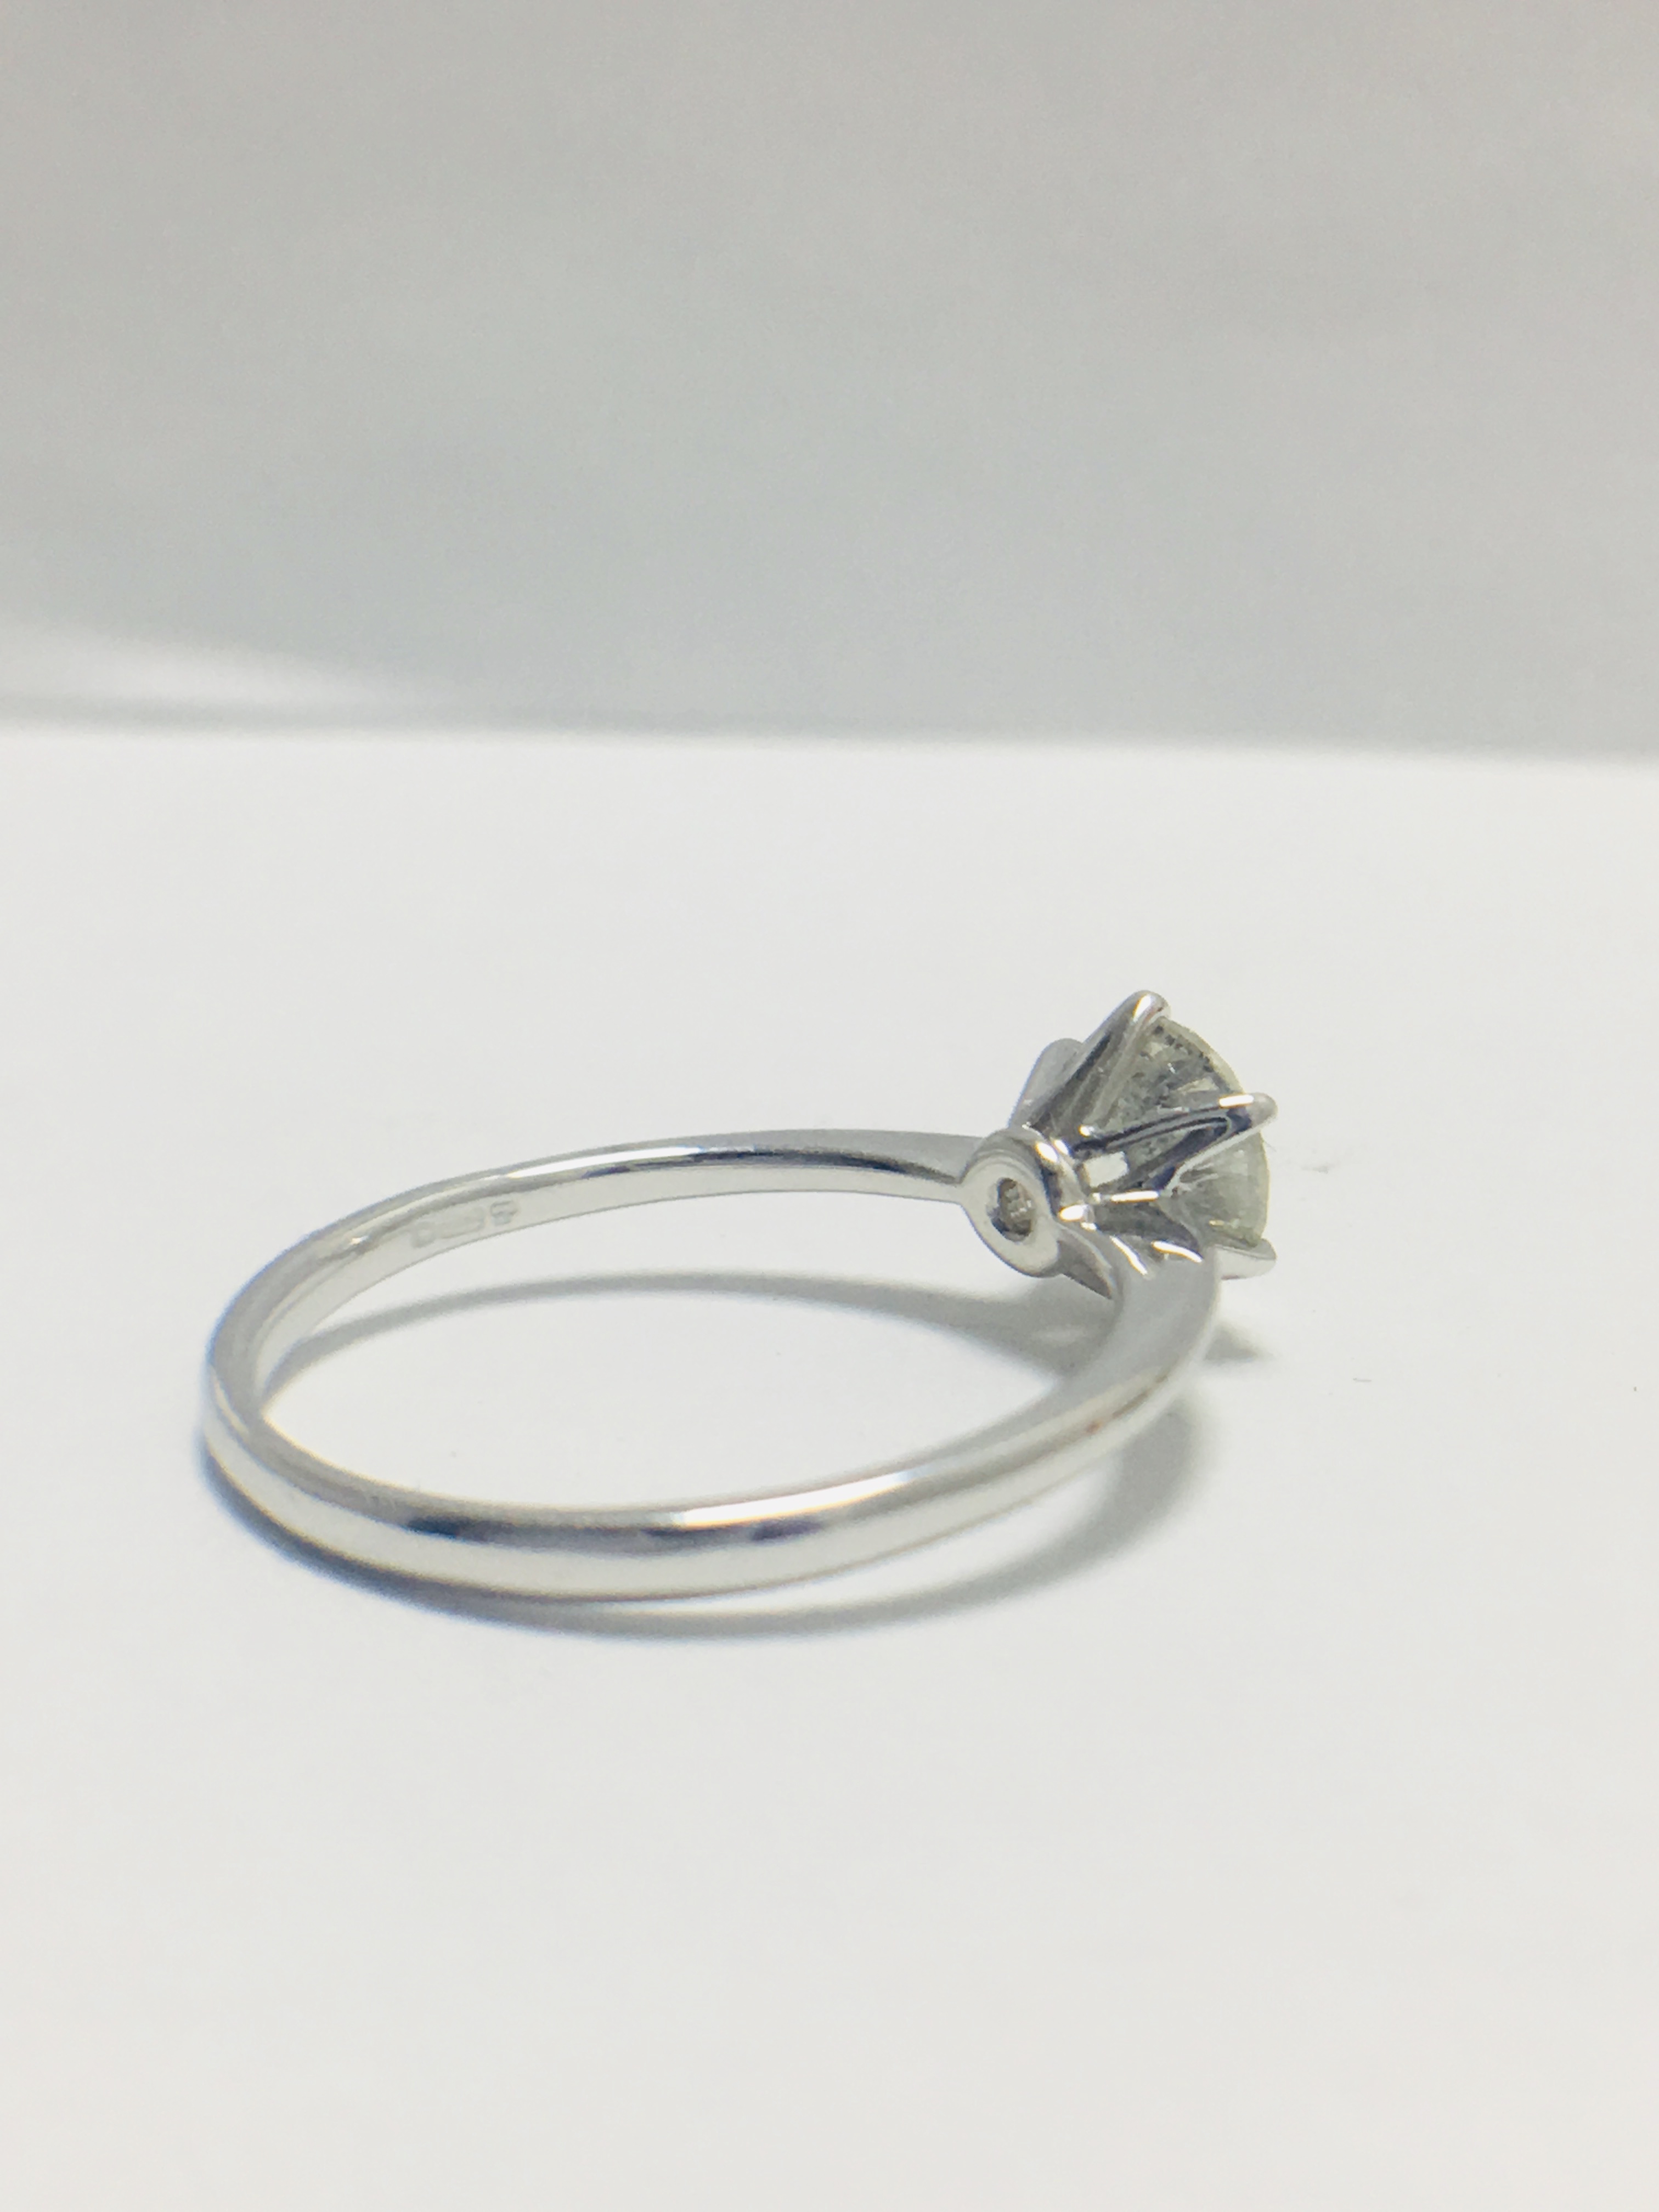 Platinum 1 carat diamond solitaire ring,WGI certification - Image 5 of 10